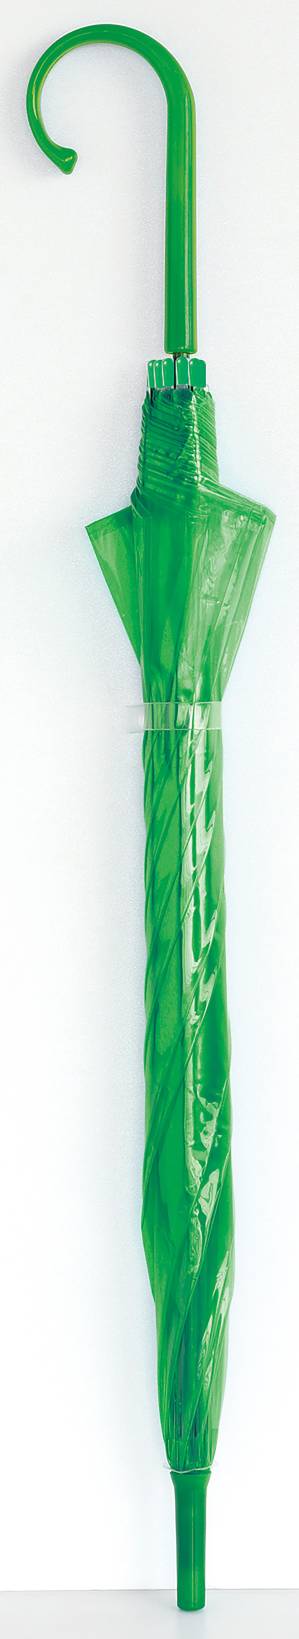 カラフルビニール傘 緑